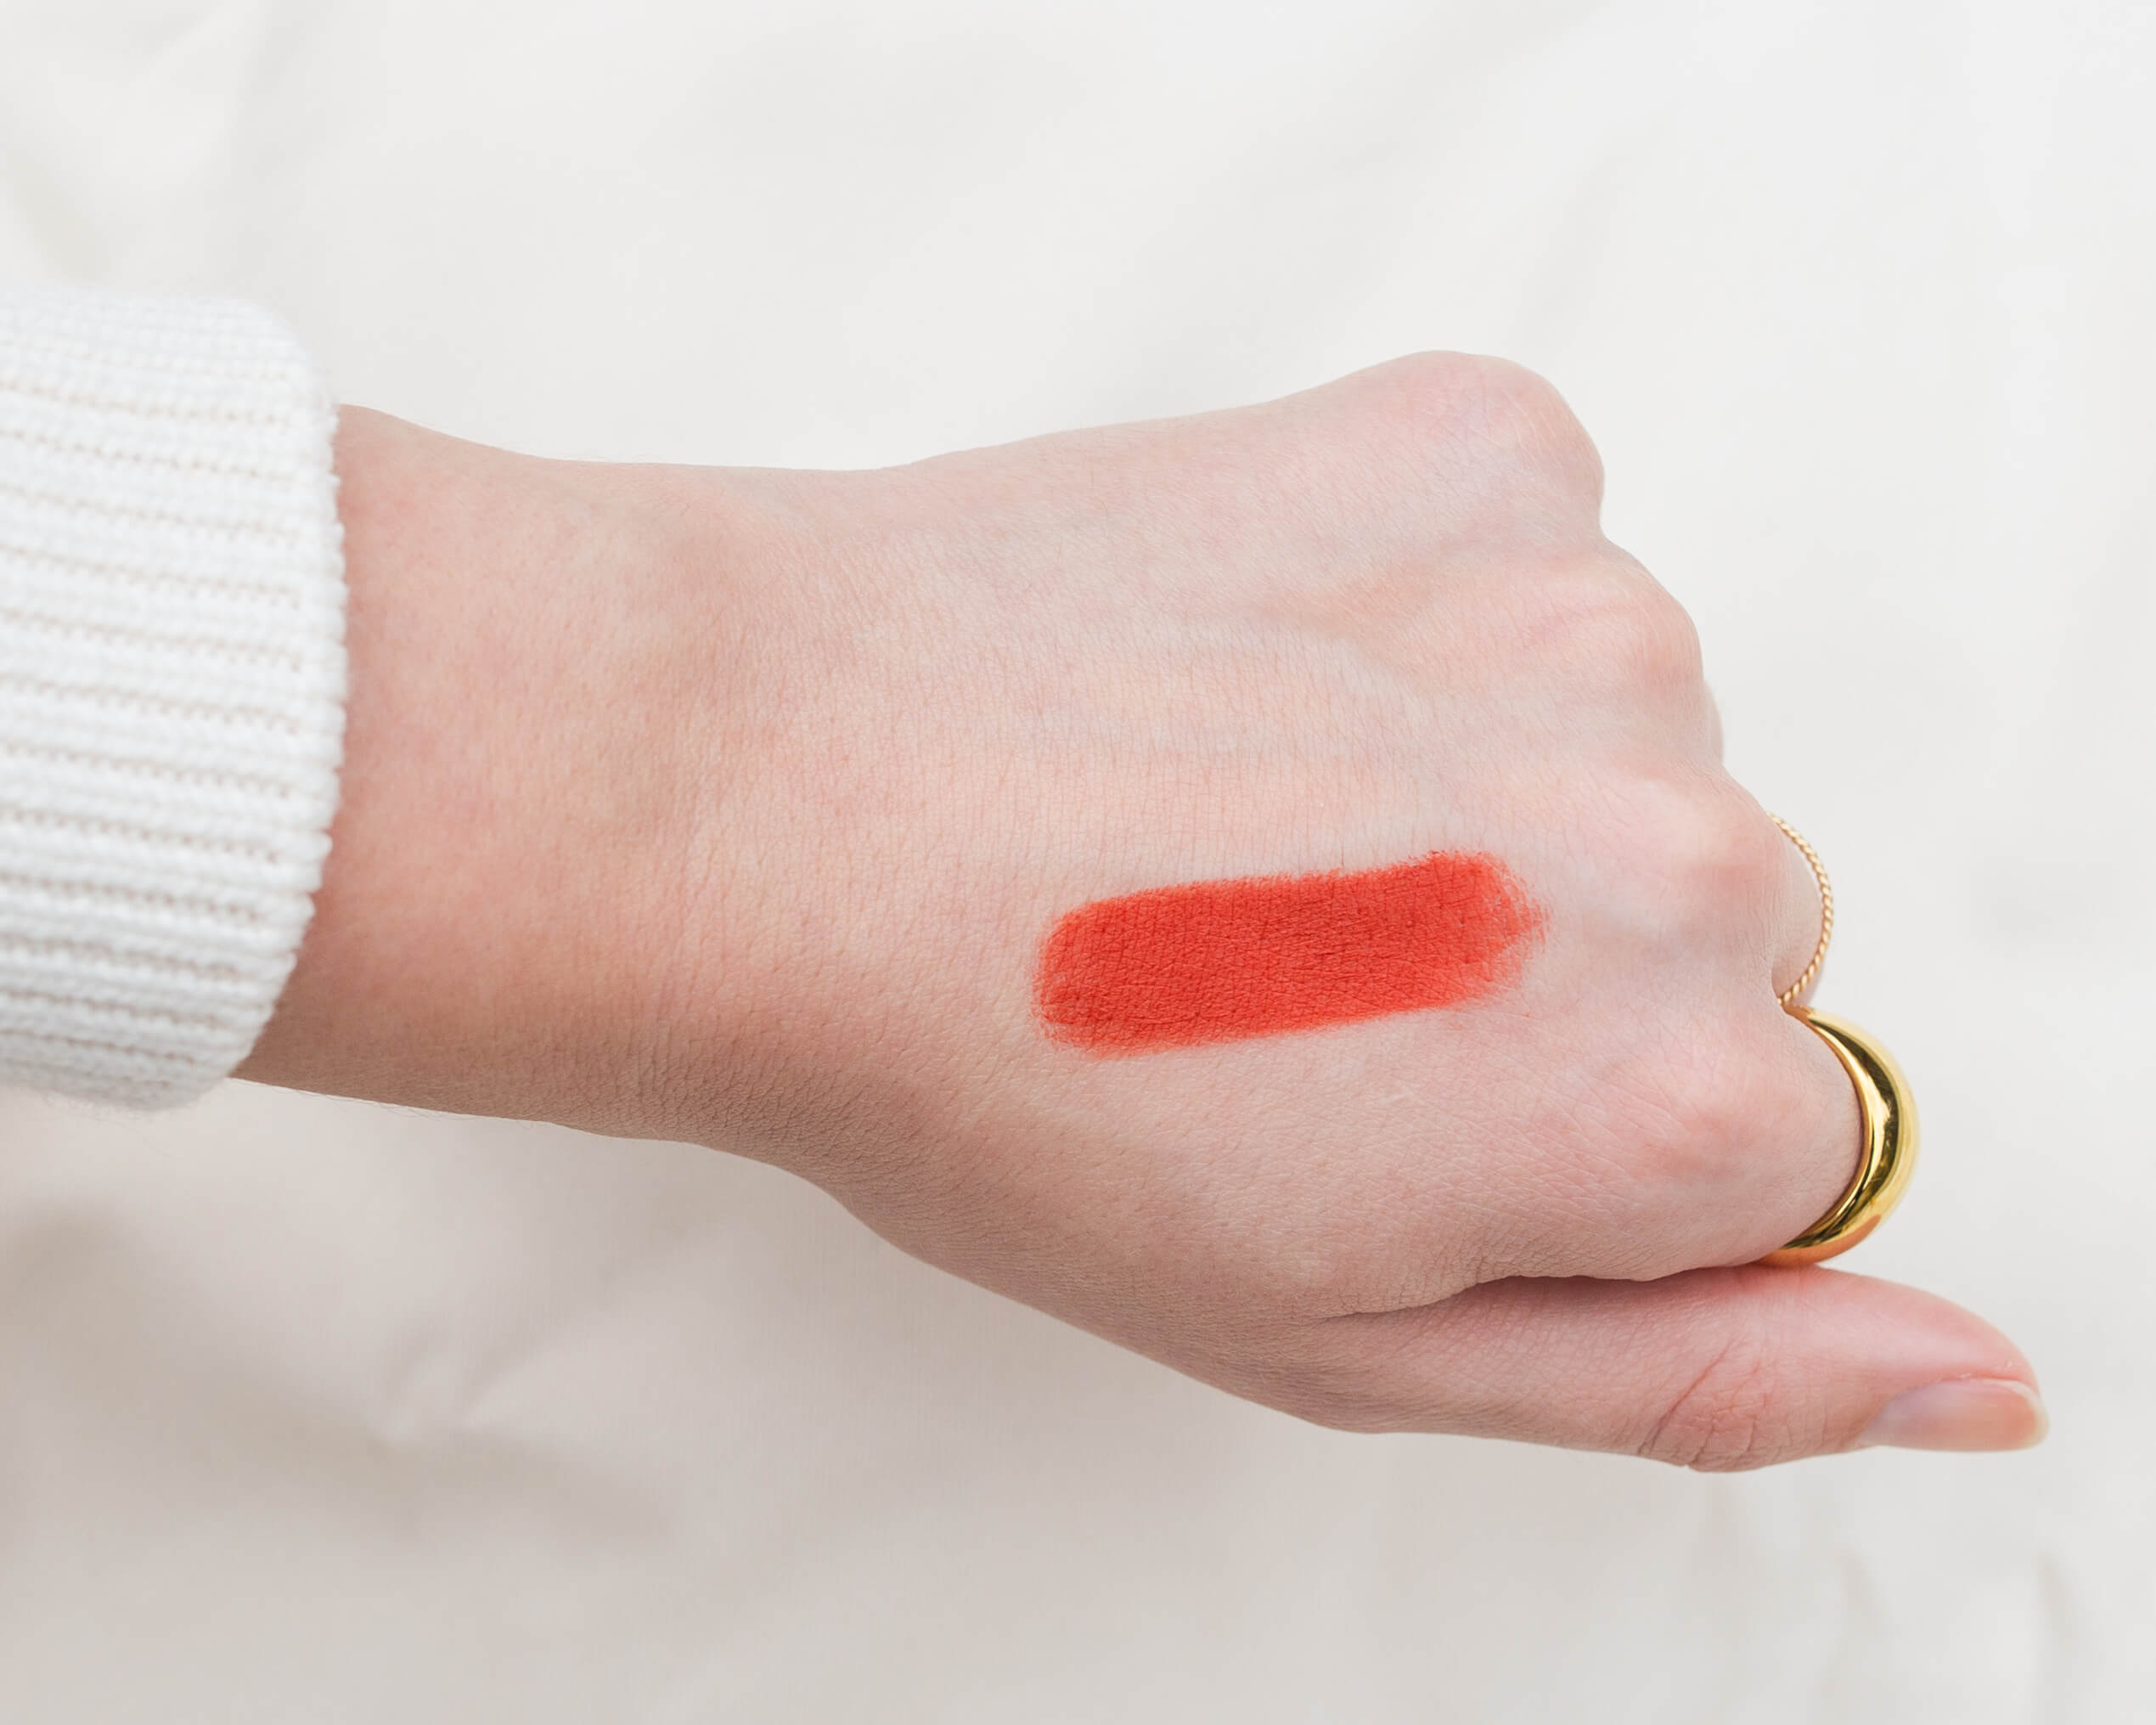 Lisa Eldridge Velvet Lipsticks: Review + Swatches (NEW SHADES!)